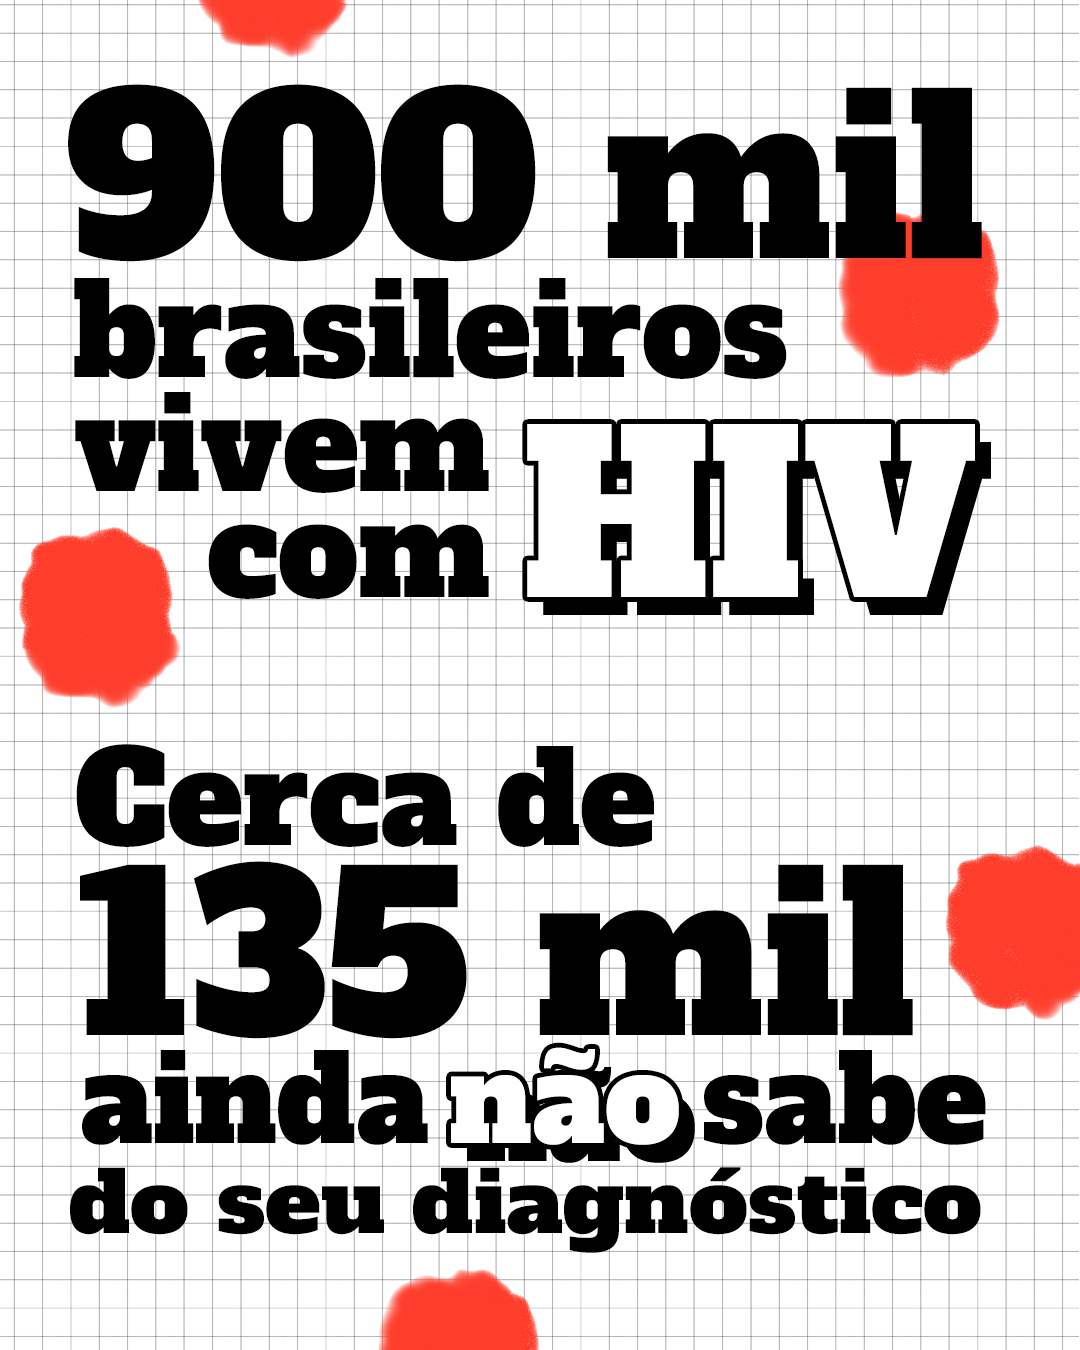 Dados HIV – Imagem com os dados: 900 mil brasileiros vivem com HIV. Cerca de 135 mil ainda não sabe do seu diagnóstico.